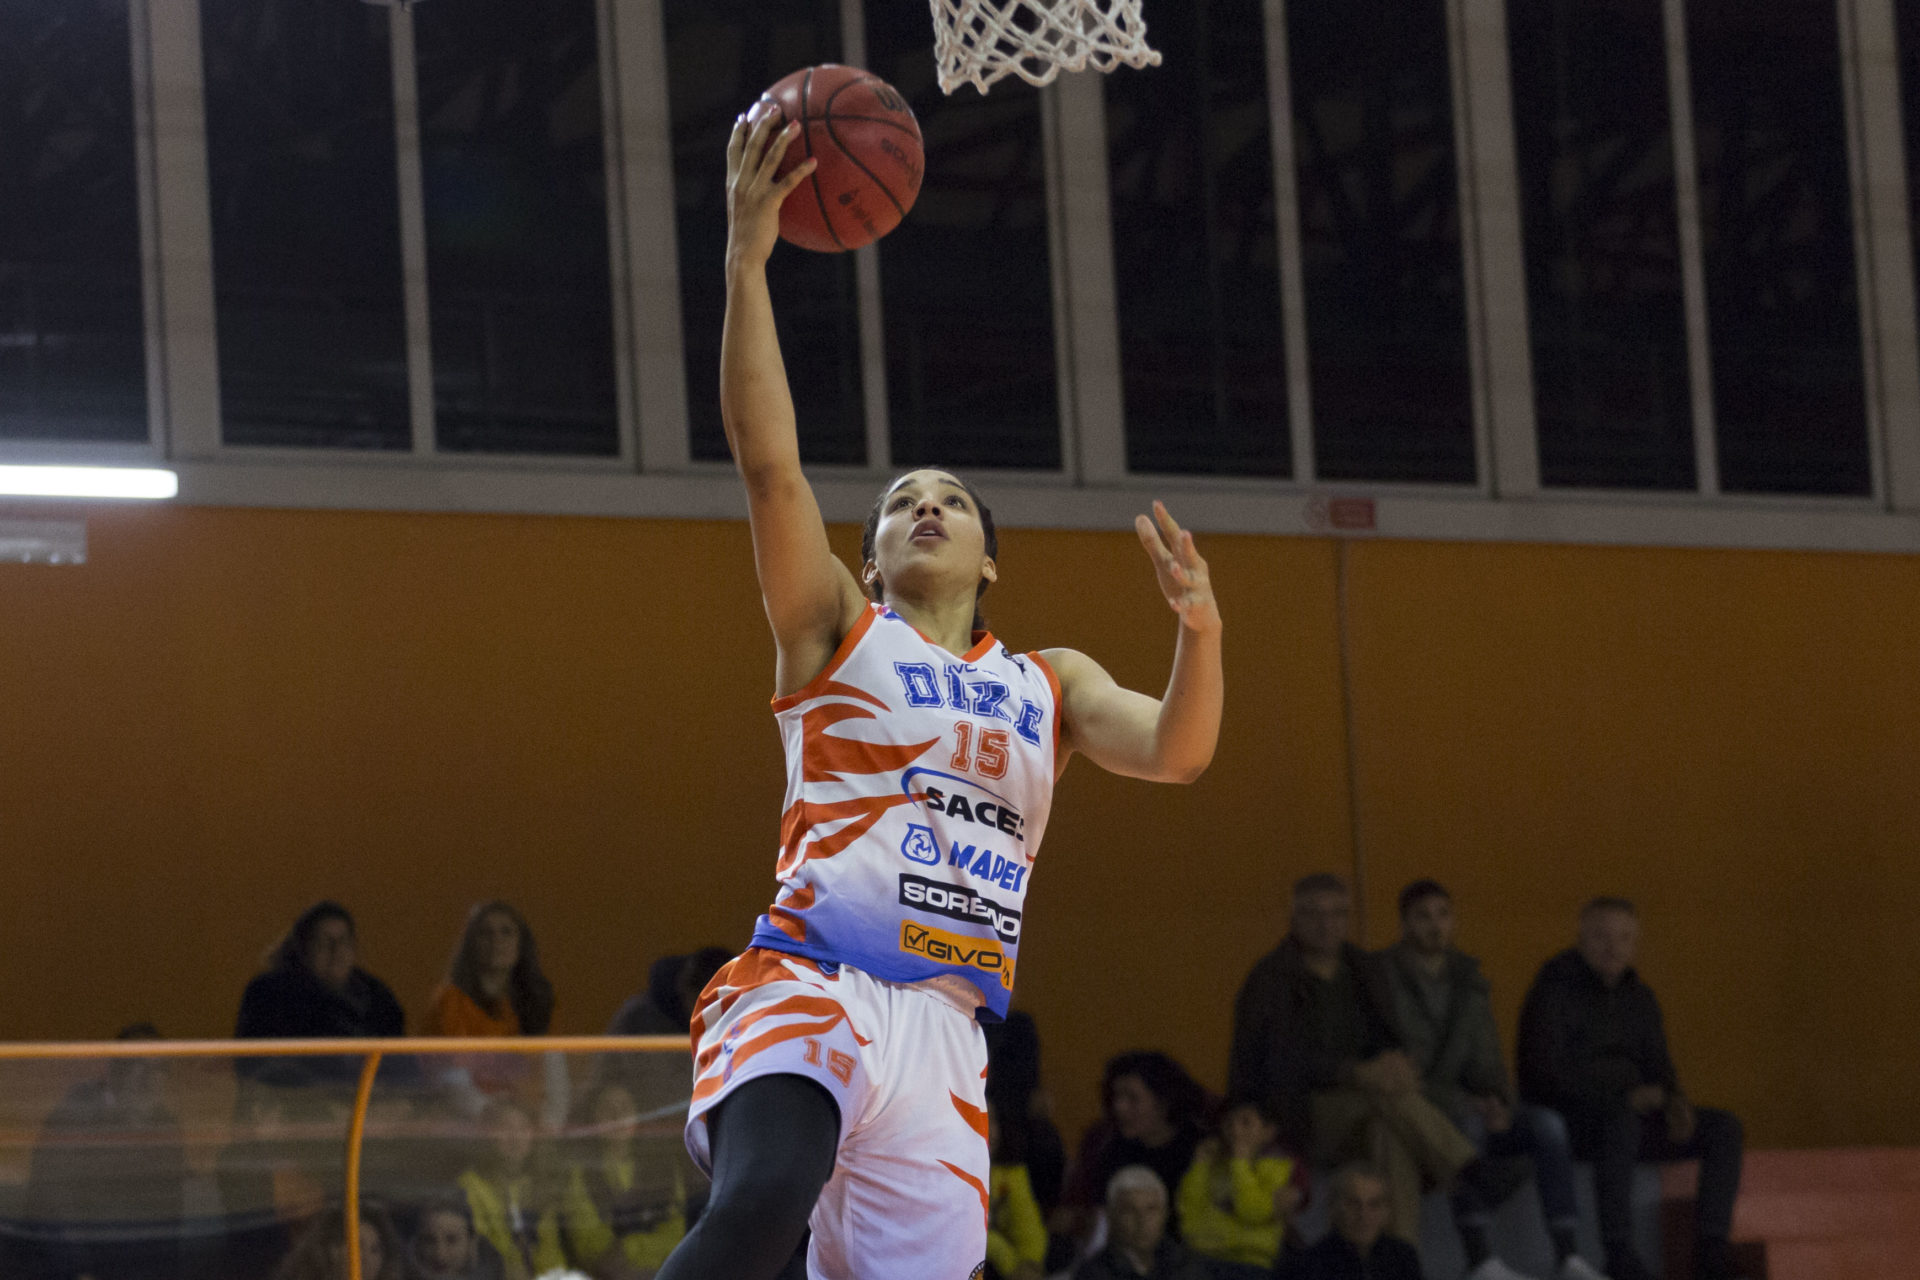 Basket: La Saces Mapei Sorbino perde con il Lucca